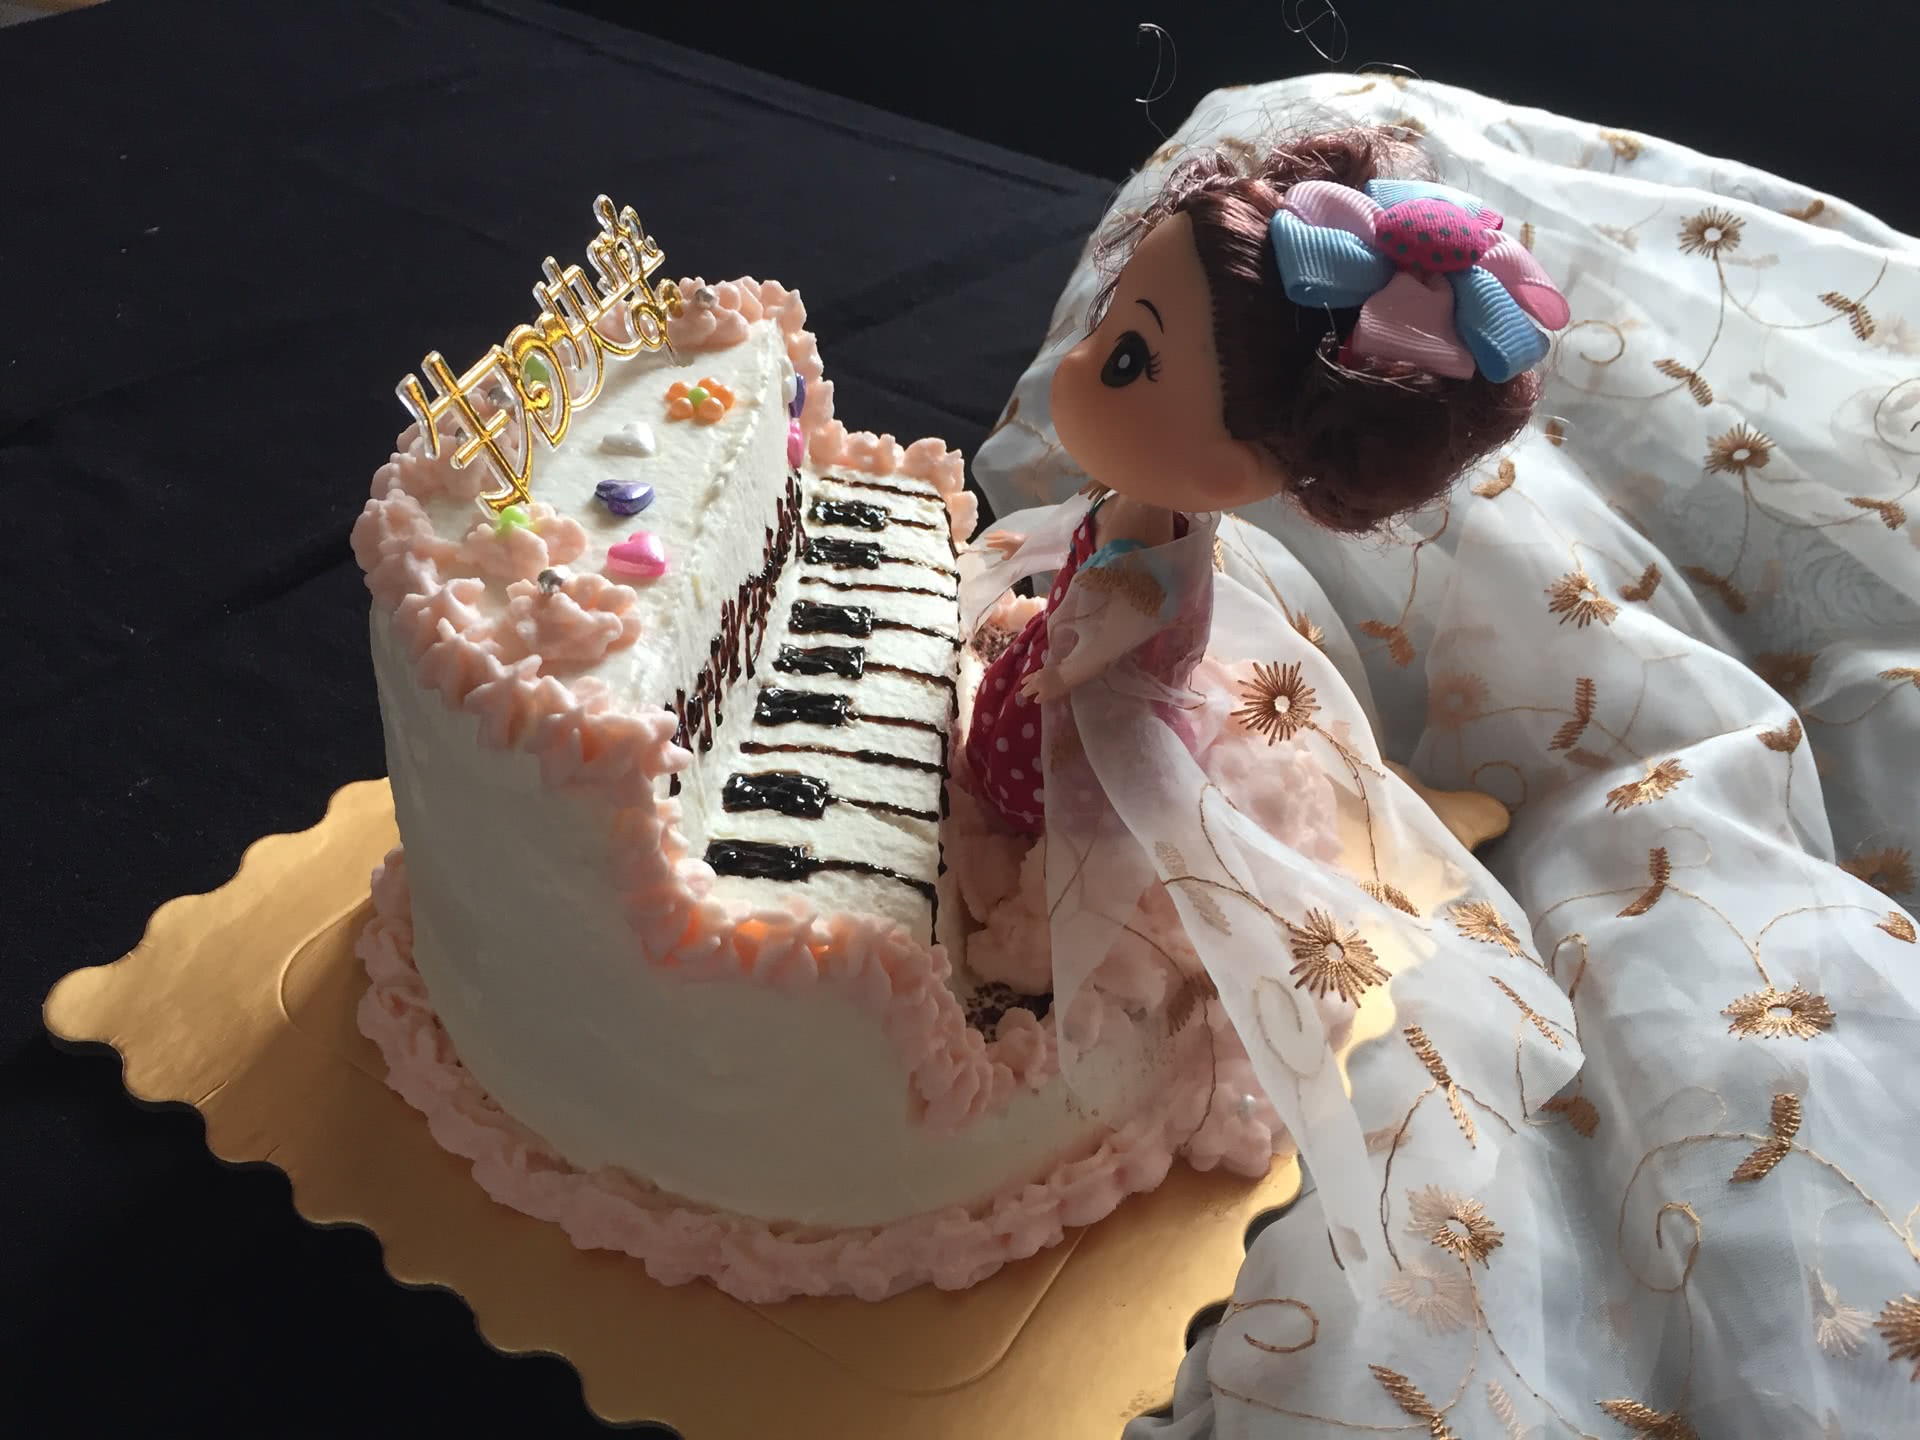 钢琴娃娃生日蛋糕裱花蛋糕#相约MOF#的做法_【图解】钢琴娃娃生日蛋糕裱花蛋糕#相约MOF#怎么做如何做好吃_钢琴娃娃生日蛋糕裱花蛋糕#相约 ...